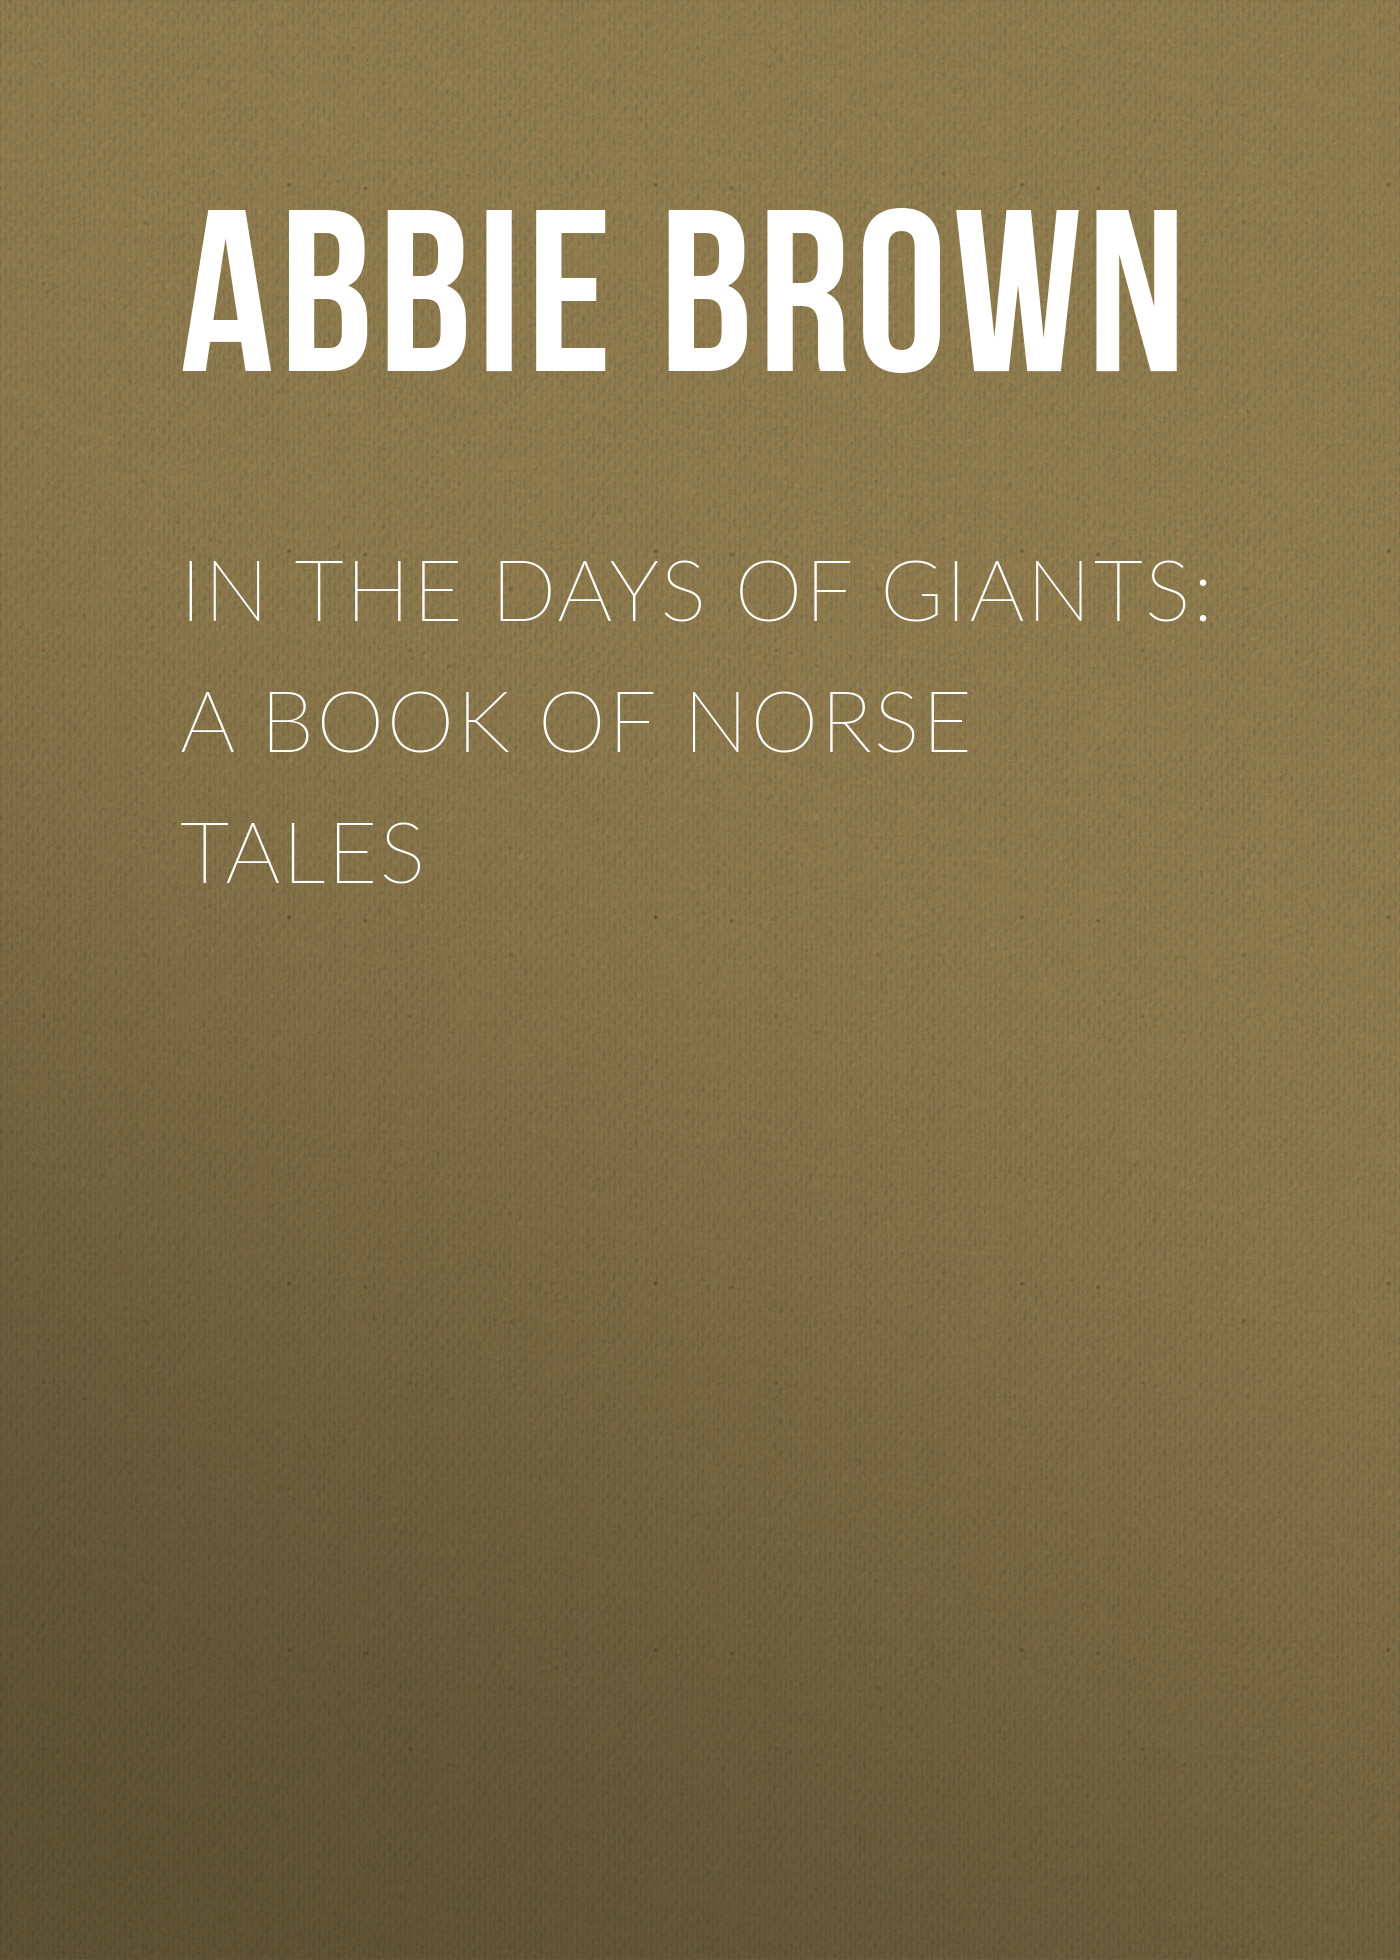 Книга In The Days of Giants: A Book of Norse Tales из серии , созданная Abbie Brown, может относится к жанру Зарубежная старинная литература, Зарубежная классика. Стоимость электронной книги In The Days of Giants: A Book of Norse Tales с идентификатором 24169868 составляет 0 руб.